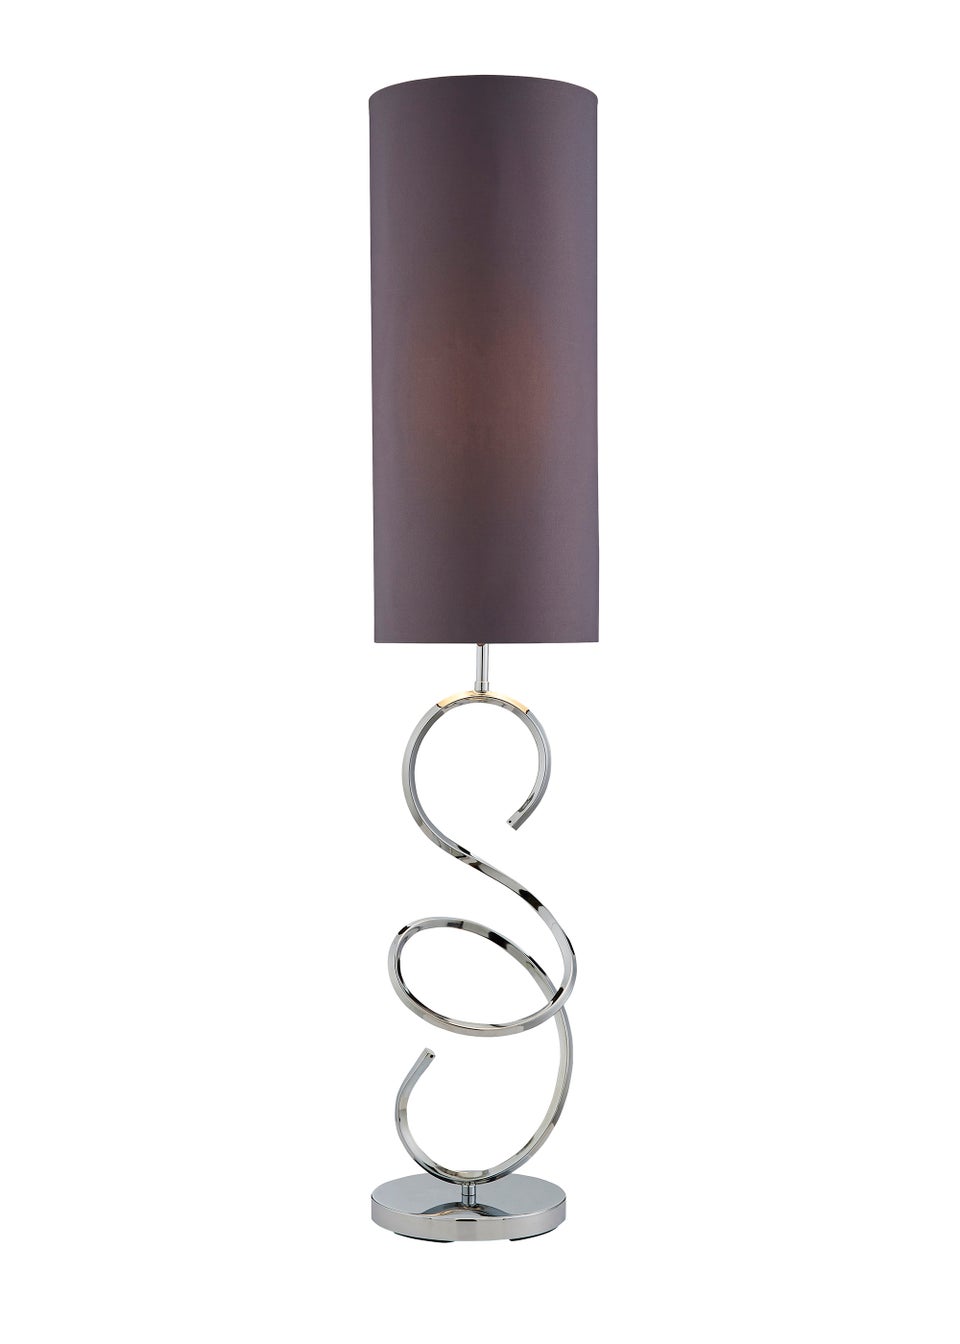 Inlight Sculpted Spiral Floor Lamp (125cm x 25cm x 25cm)